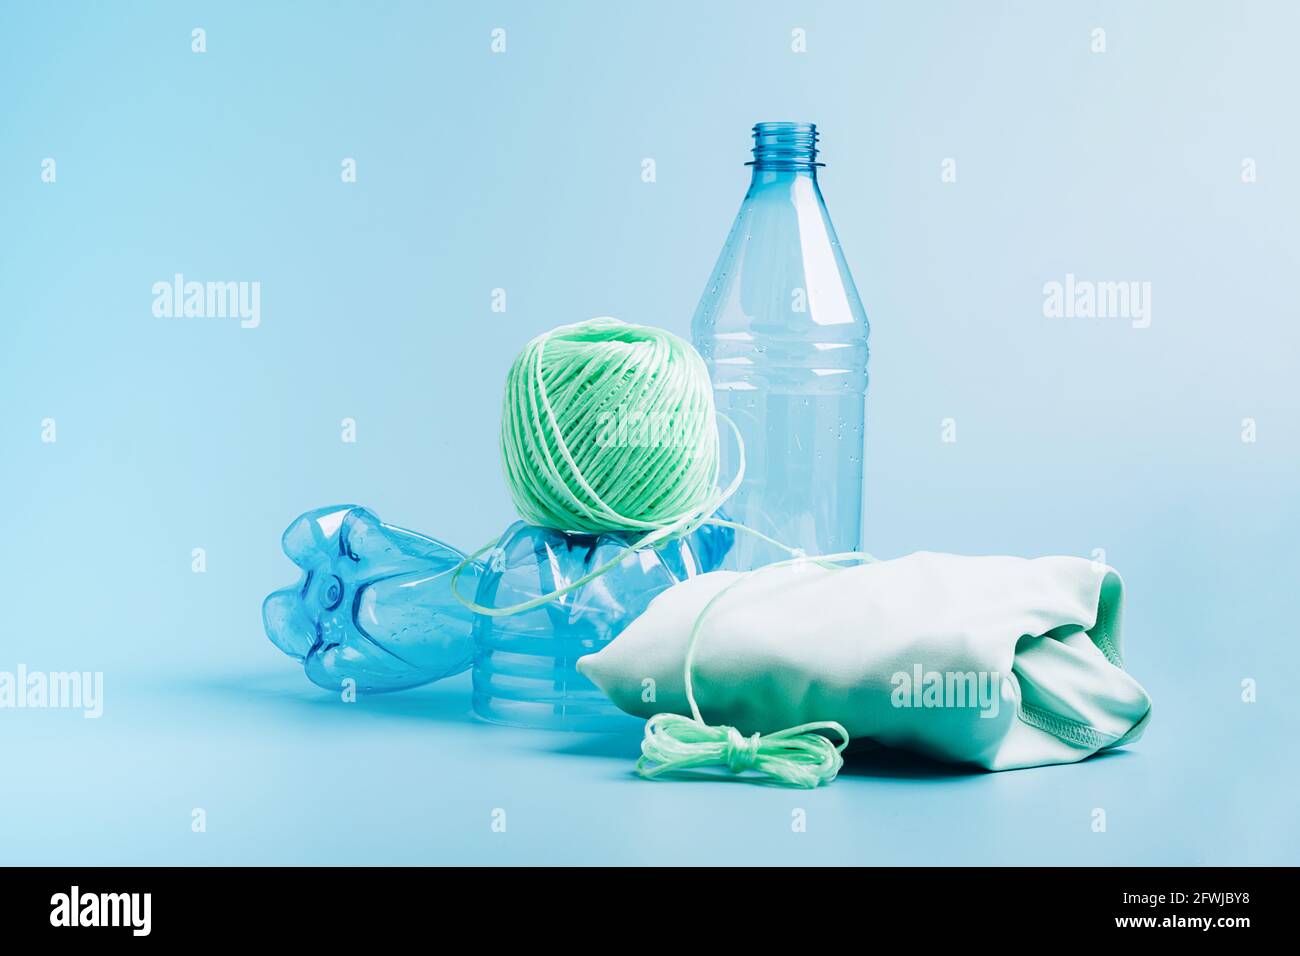 Le concept de recyclage et de réutilisation du plastique. Bouteille en  plastique vide et fibre de polyester recyclée, tissu synthétique sur fond  bleu. Environnement Photo Stock - Alamy